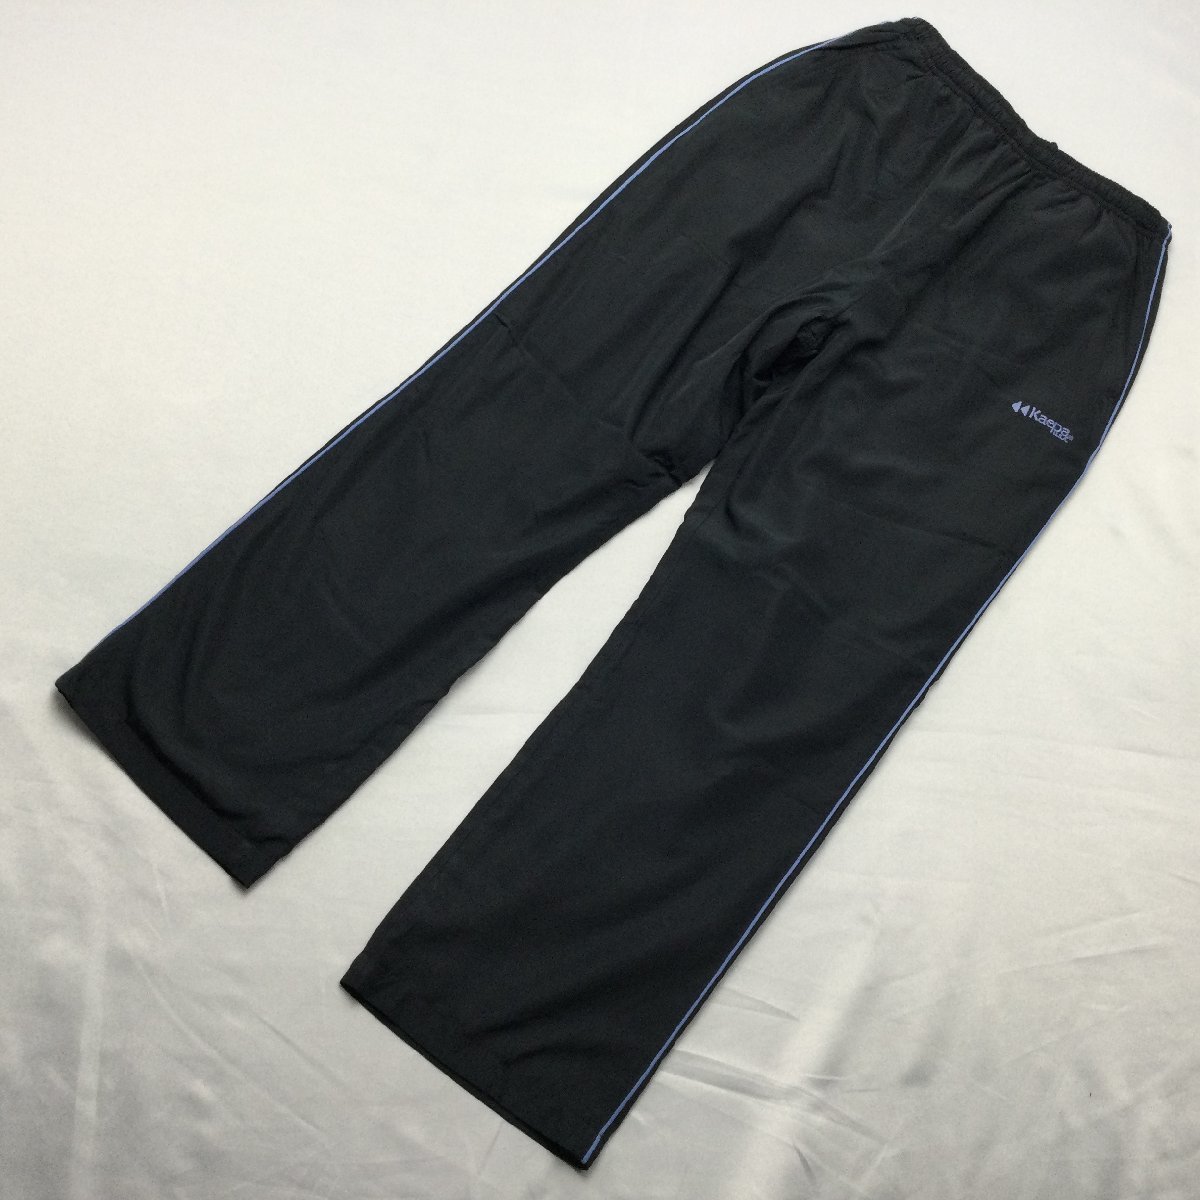 [ бесплатная доставка ][ новый товар ]Kaepa женский брейкер брюки ( с изнанки флис водоотталкивающая отделка UV cut длина ног 66) L черный * sax *473533-66